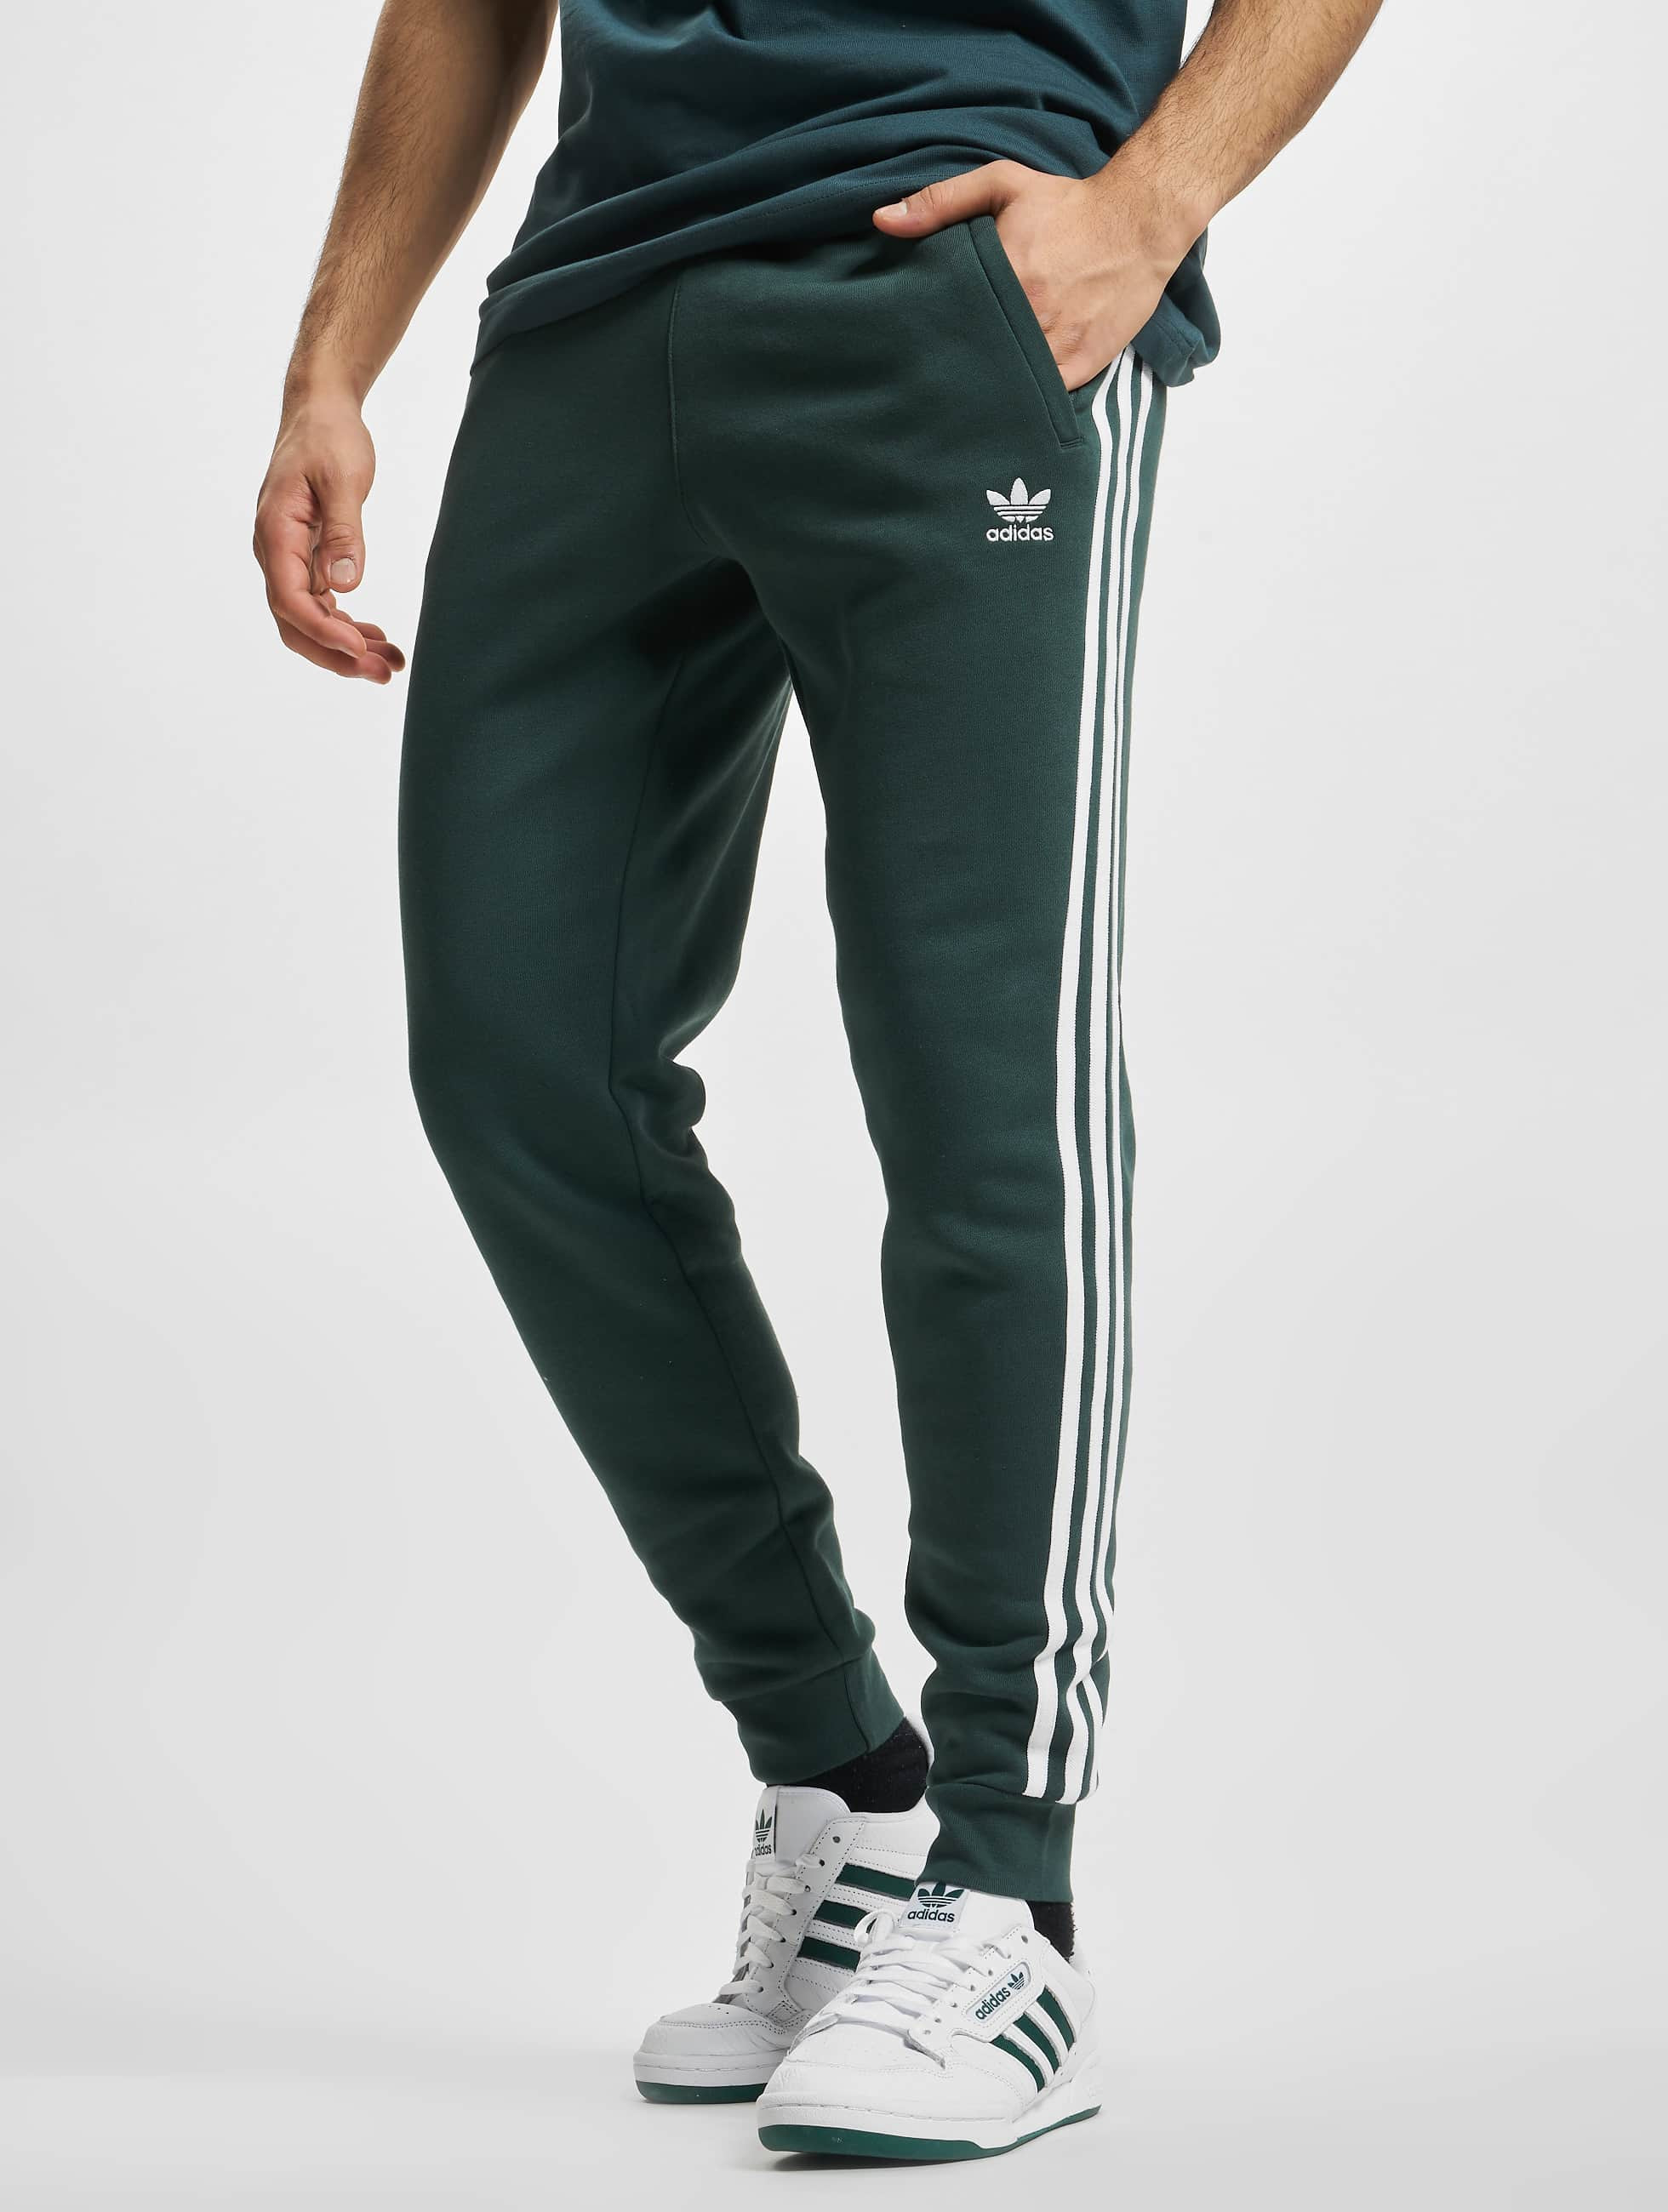 Onderling verbinden melk wit via adidas Originals broek / joggingbroek Originals 3-Stripes in groen 929615